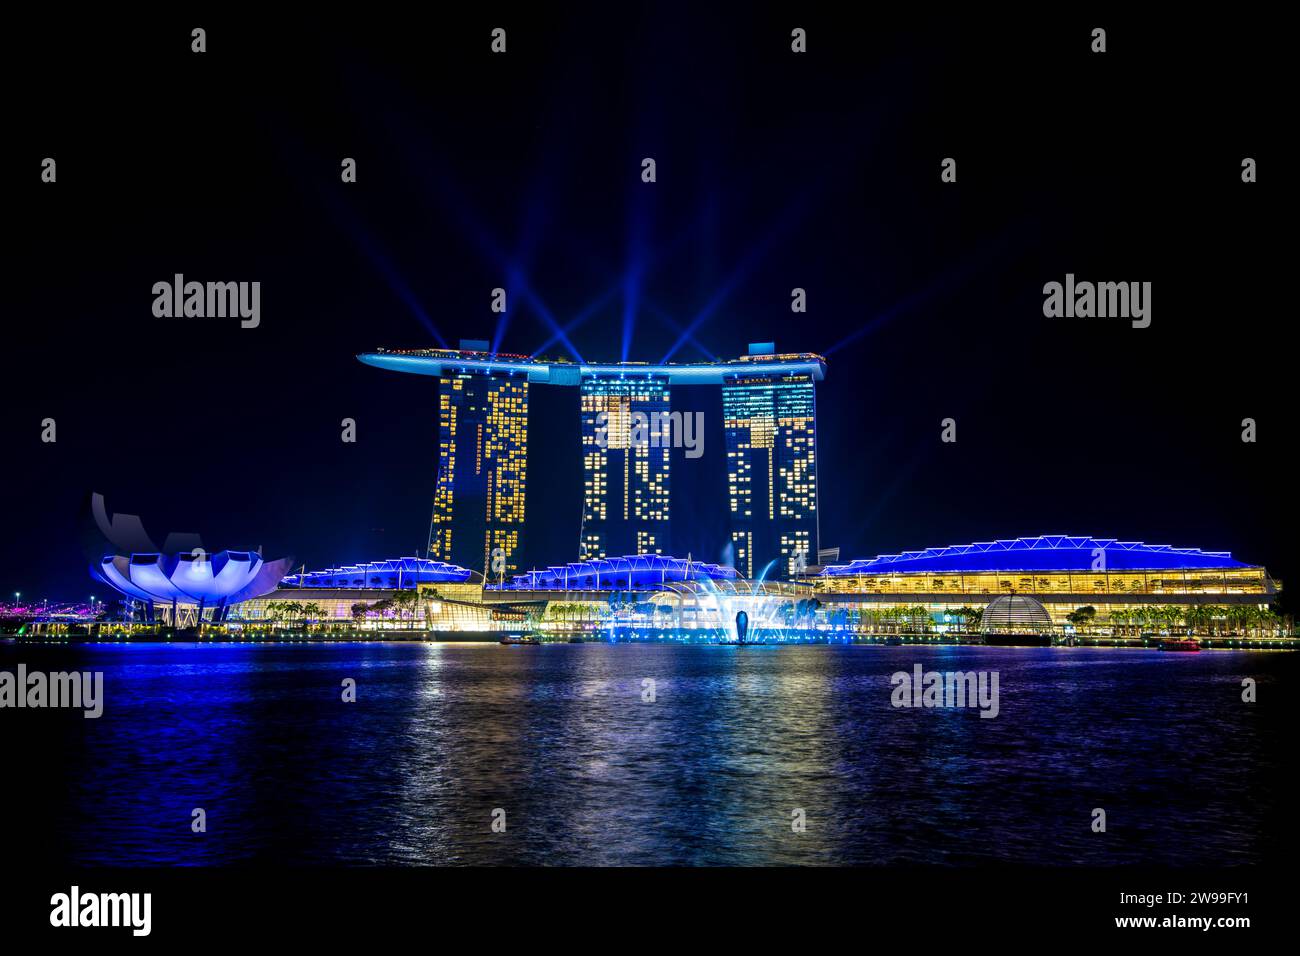 Illuminating the night sky, a spectacular light show illuminates the skyline of Marina Bay in Singapore Stock Photo